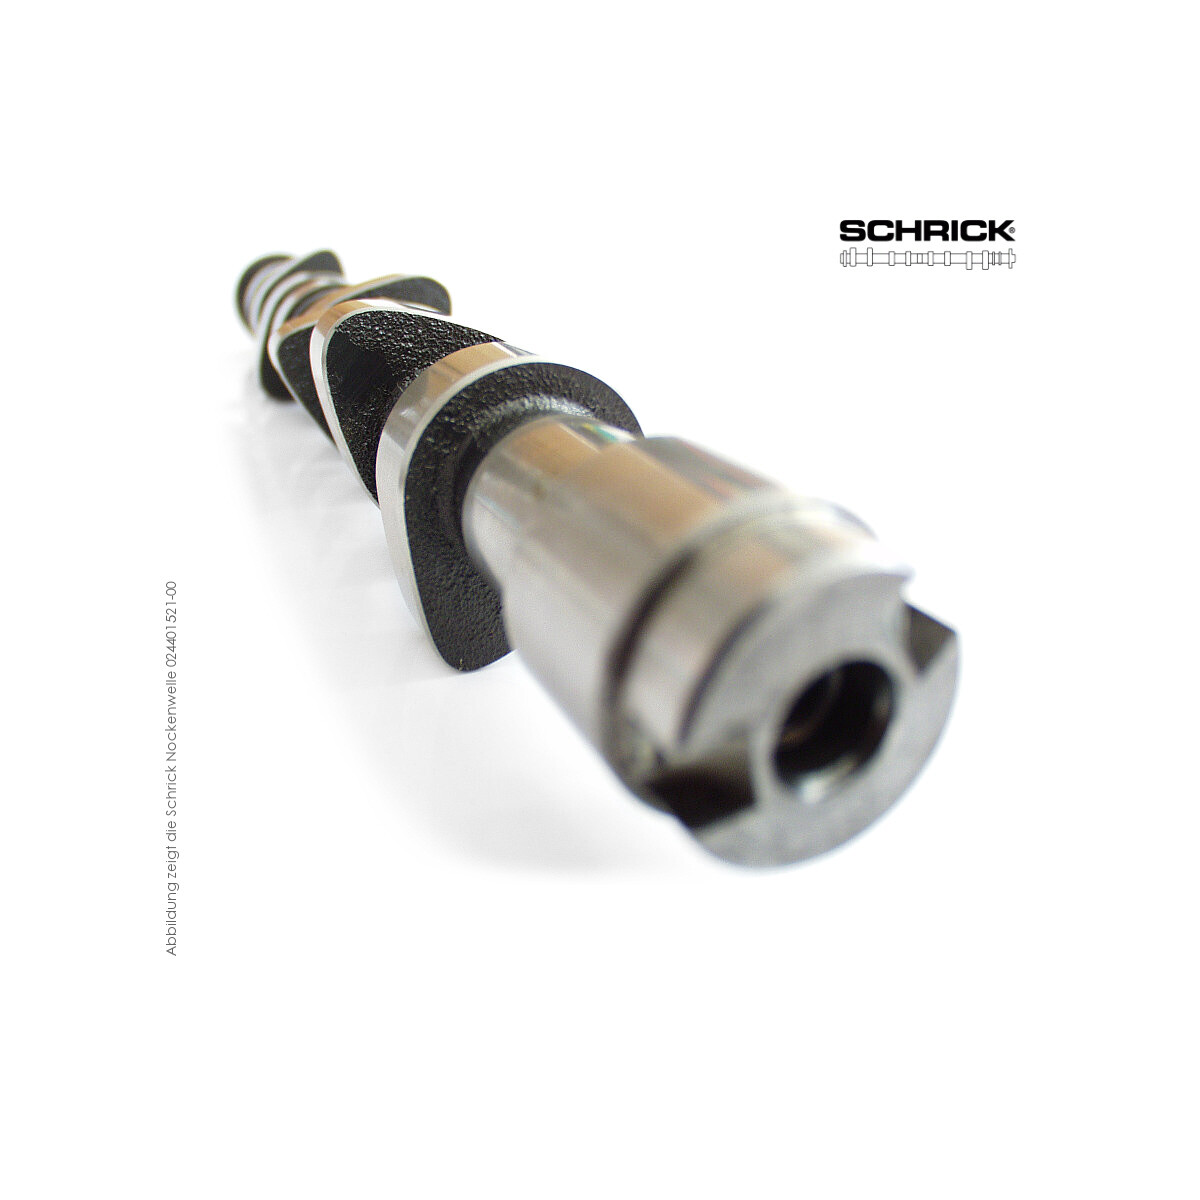 Schrick Nockenwelle für BMW M3 E30 | 2,0-2,5L 16V 4-Zyl. S14  | 320° Synchron (Schrick 0227D1200-02)